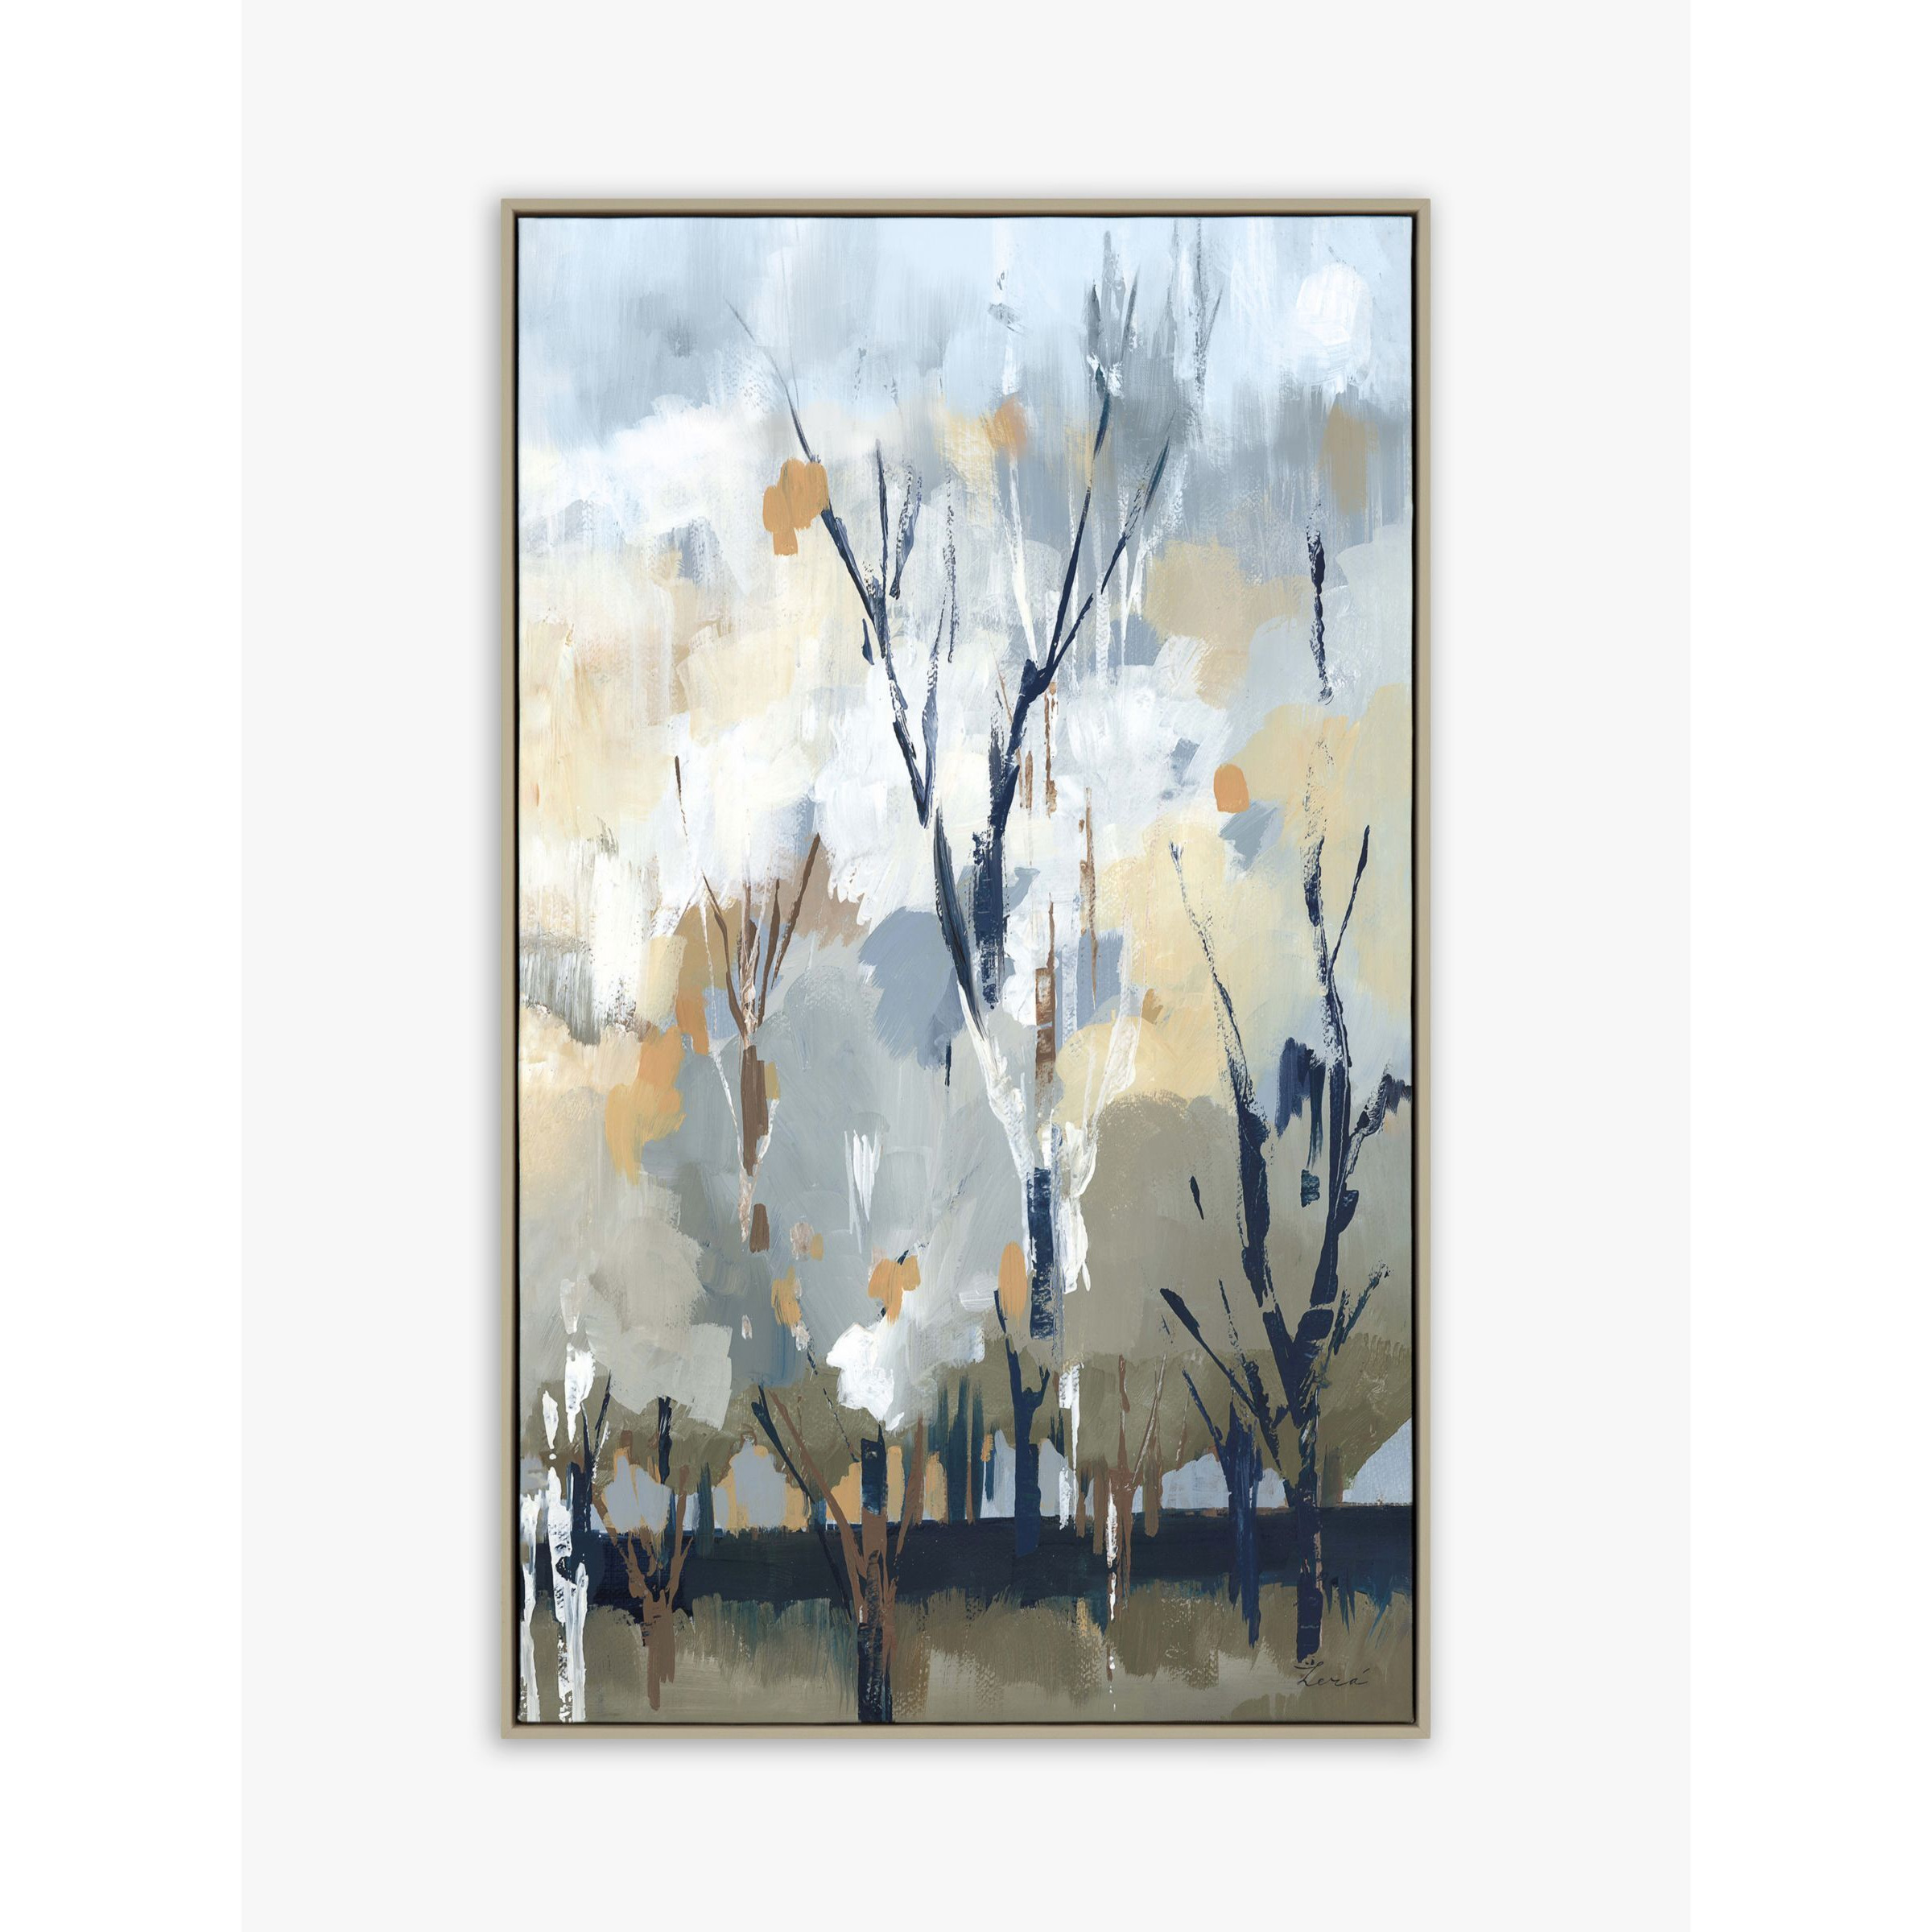 A Lera - 'Silver Birch Blues' Framed Canvas Print, 67 x 40cm, Grey/Blue - image 1